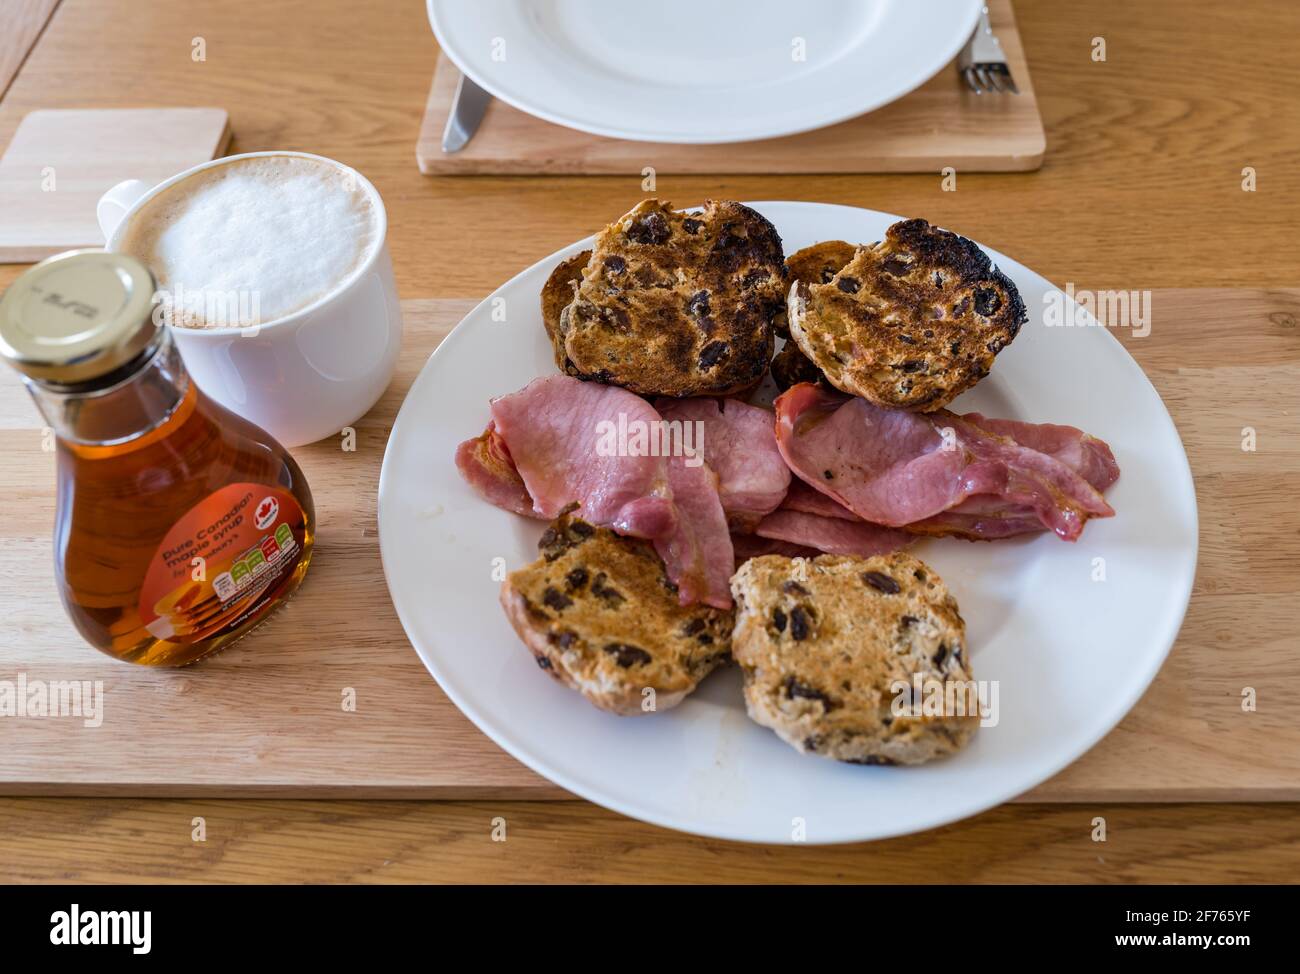 Frühstück oder Brunch mit heißen Brötchen mit Speck und Ahornsirup auf einem weißen Teller und Kaffee-Latte Stockfoto